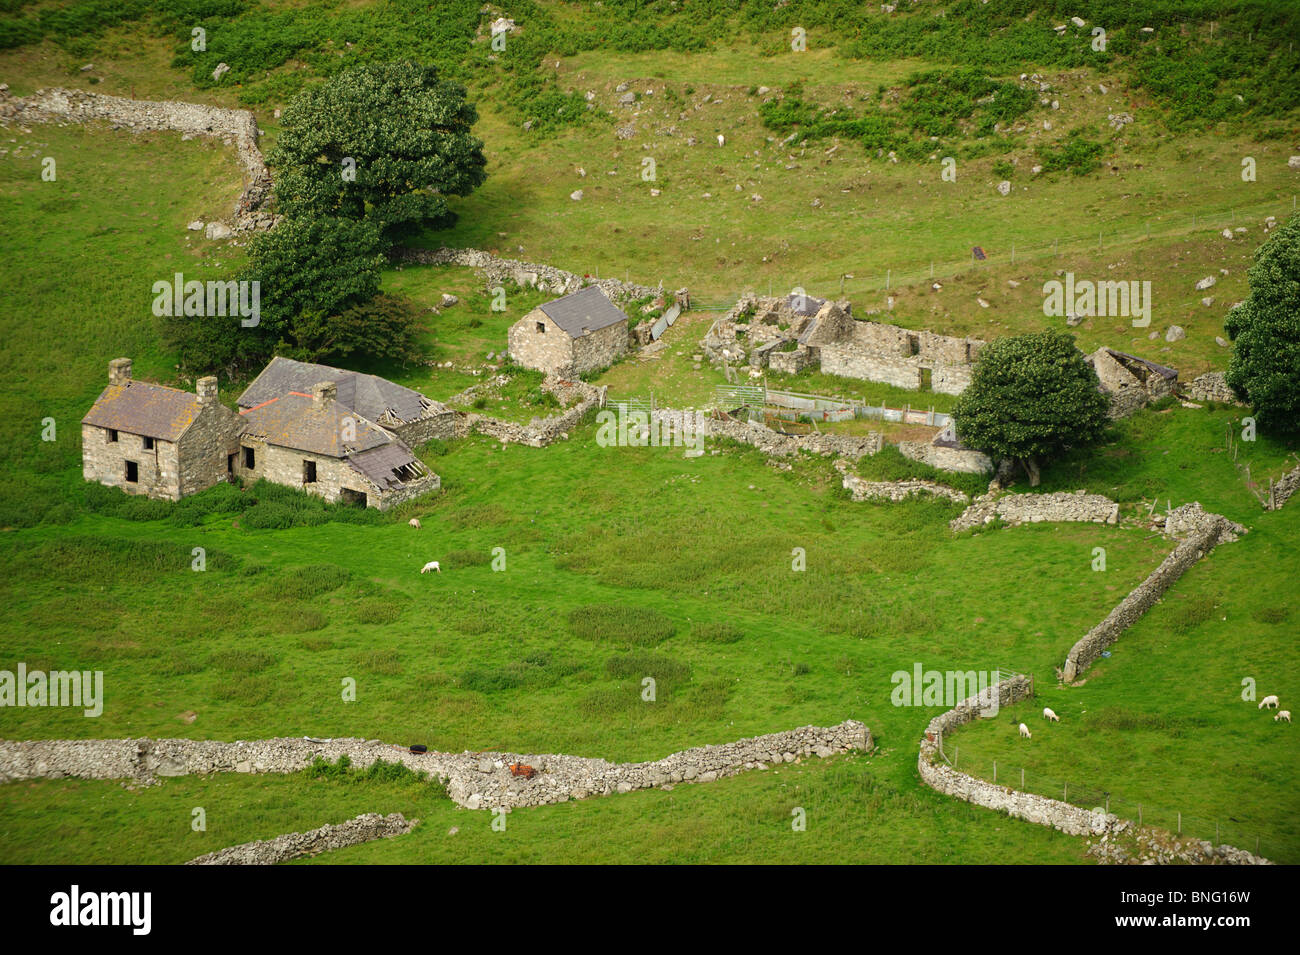 An old abandoned hill farm in Nant Gwrtheyrn, Lleyn peninsula, Gwynedd North Wales Stock Photo